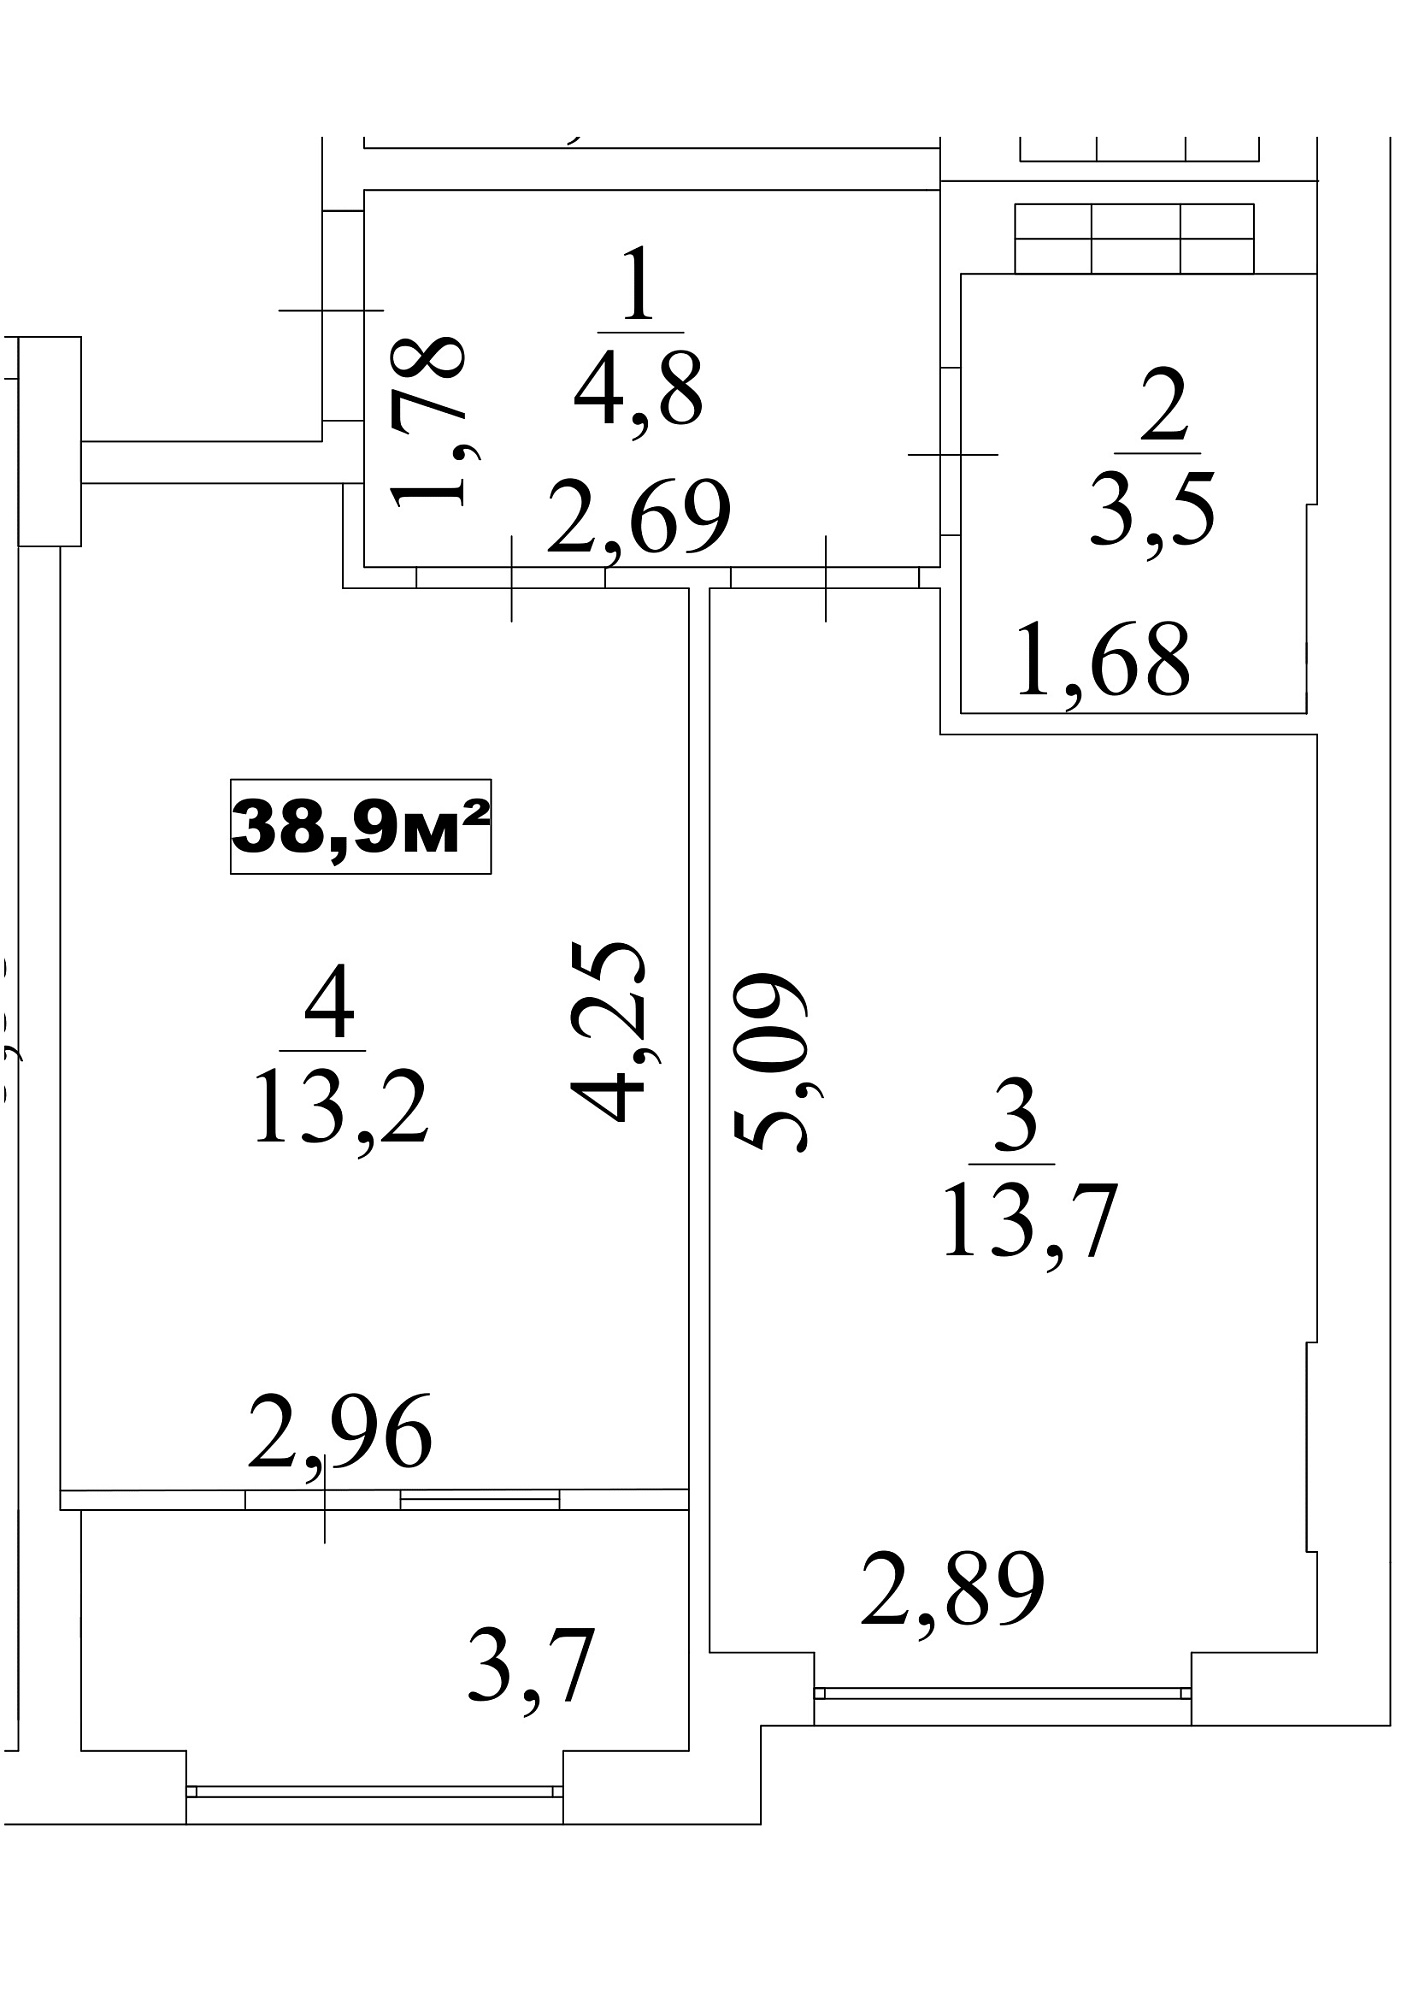 Планування 1-к квартира площею 38.9м2, AB-10-05/0043в.